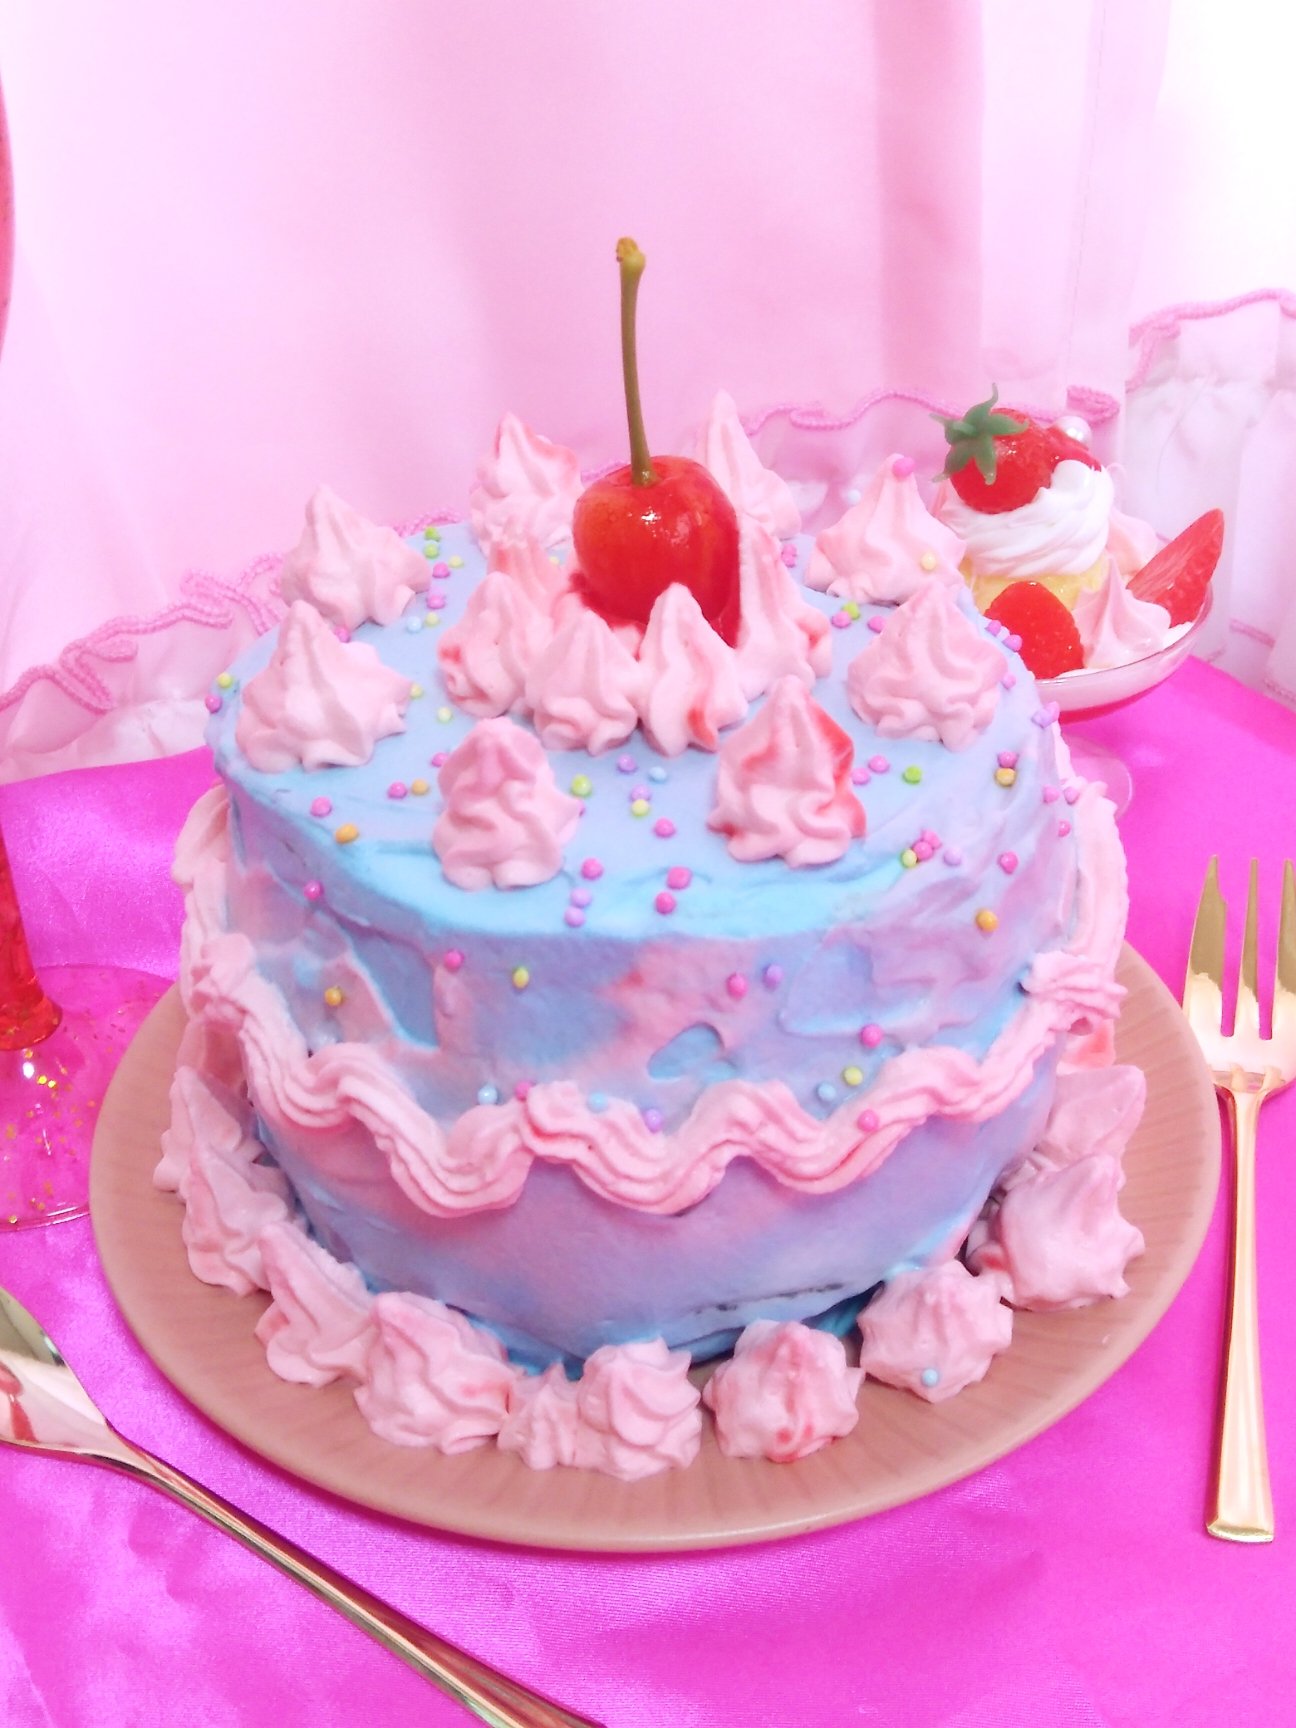 Twitter 上的 Himeno ピンクとブルーのメルヘンチックなケーキを作ってみました 手作りケーキ 手作りスイーツ ピンクと水色 チェリーケーキ さくらんぼ ケーキ カラフル ゆめかわいい メルヘンチック 女子力向上 女子力アップ かわいい食べ物 甘い